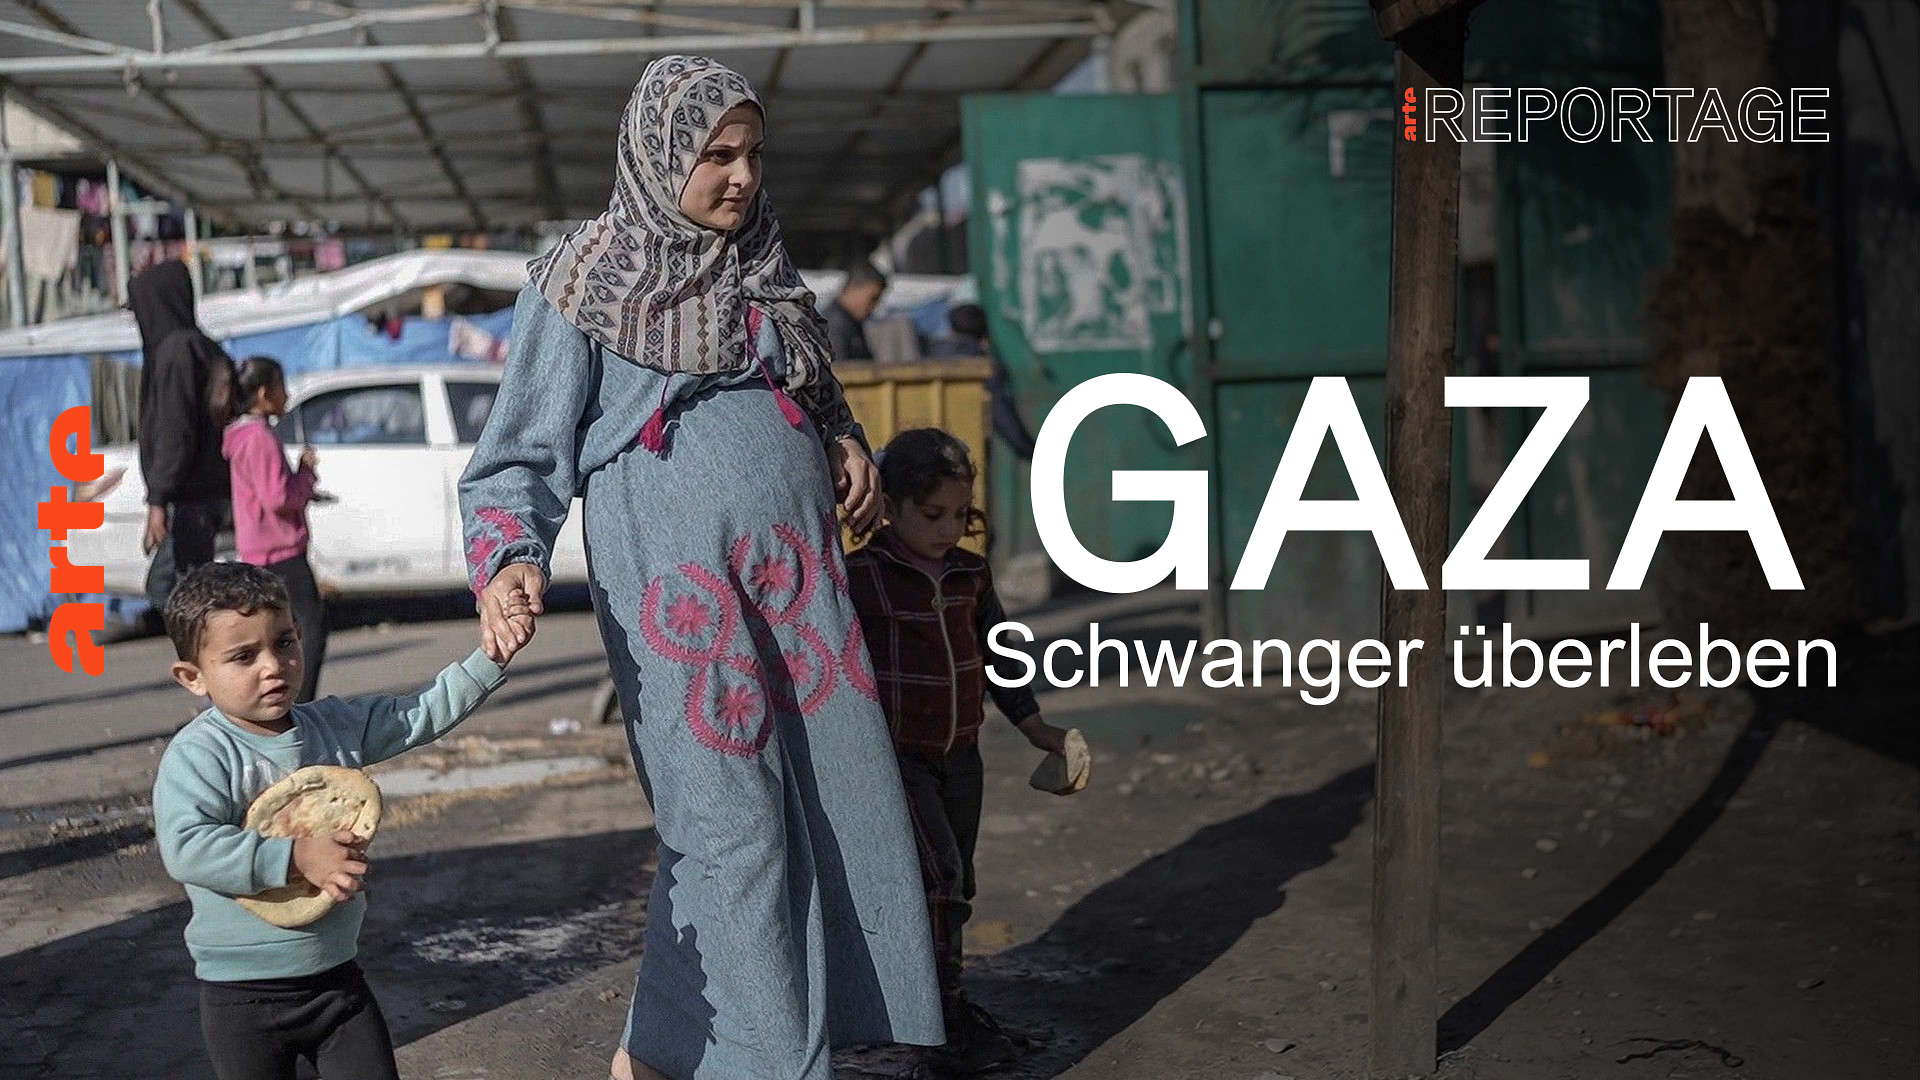 Gaza: Schwanger überleben, irgendwie…